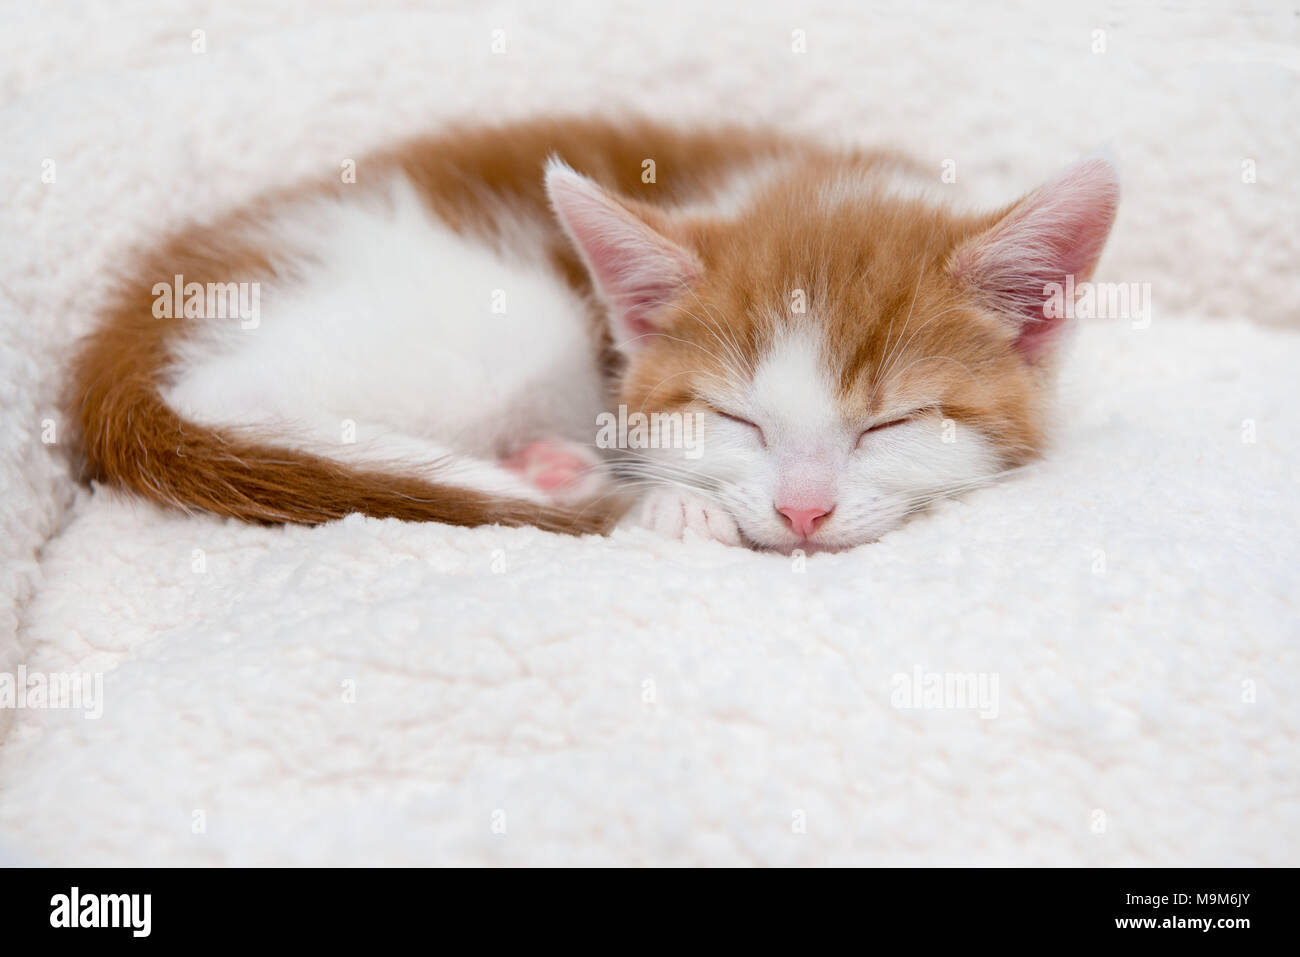 Single cute tired little kitten sleeping in a furry basket Stock Photo